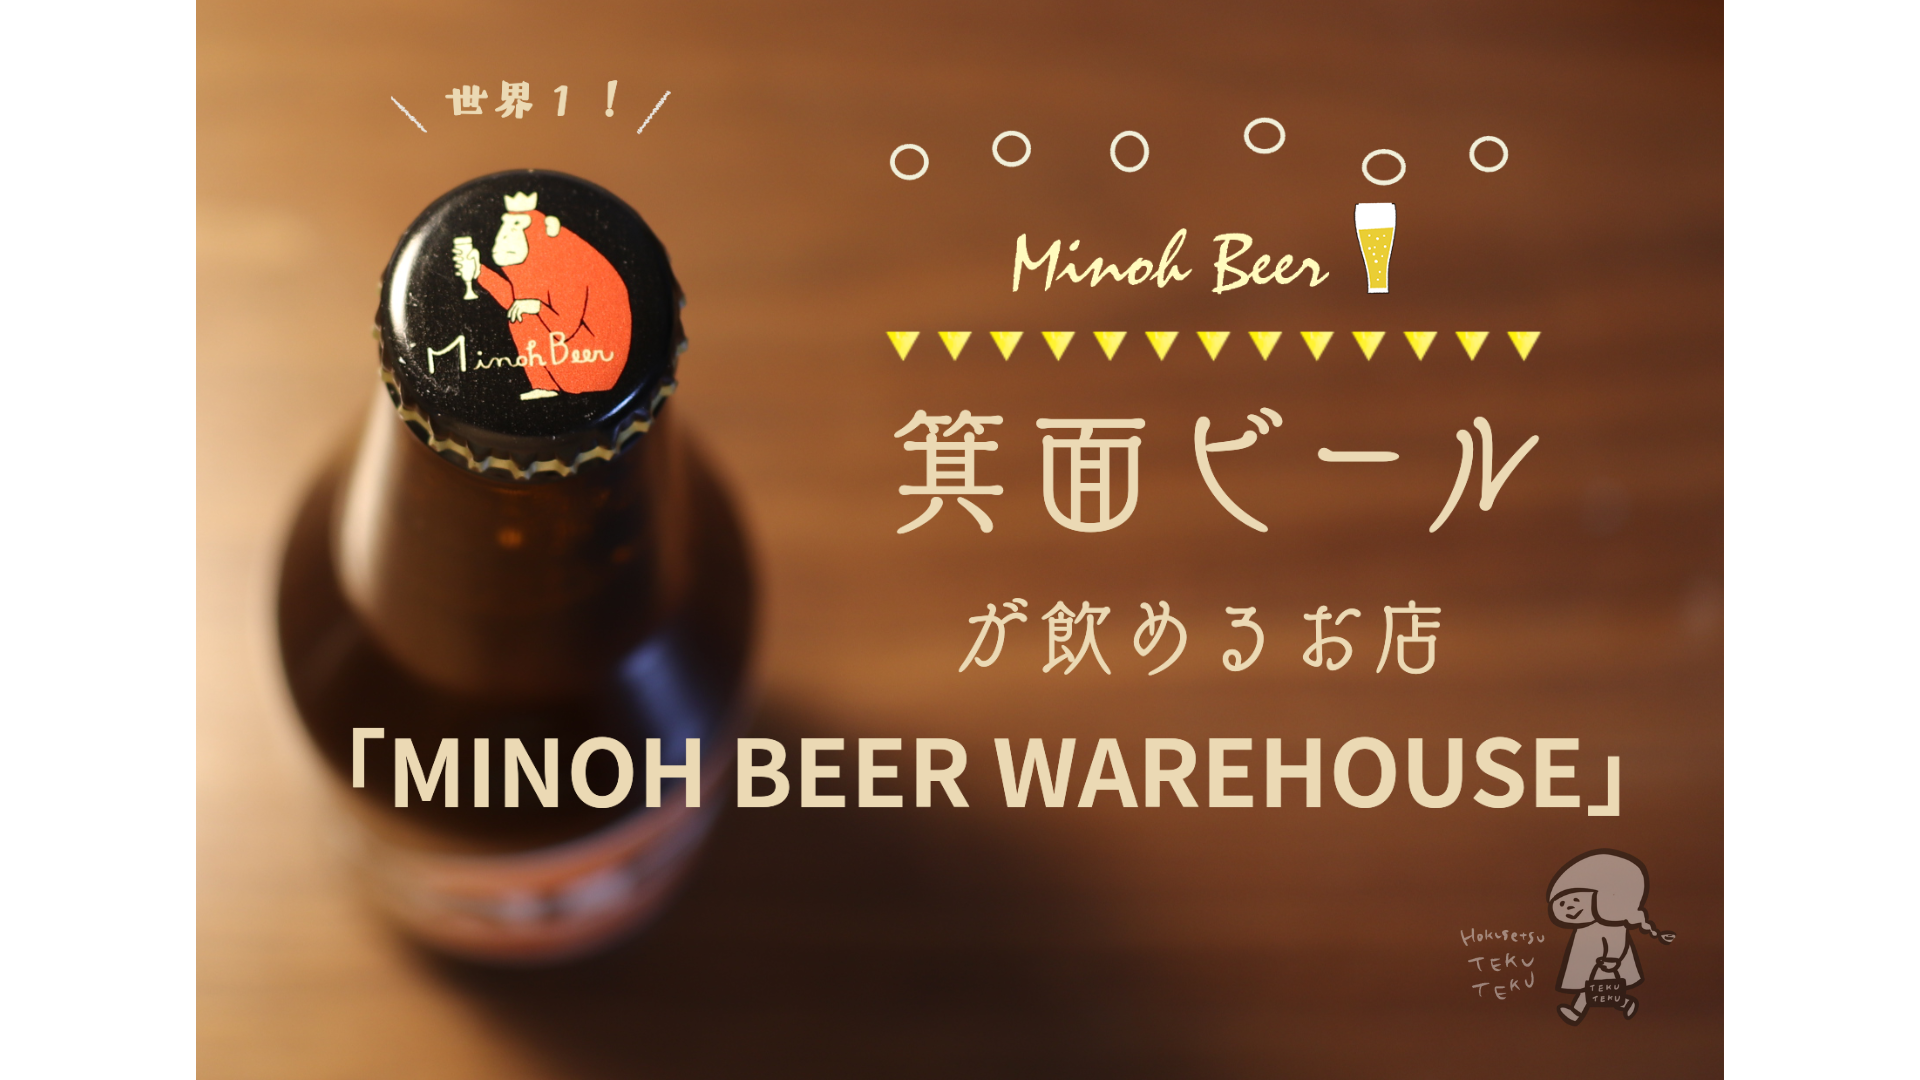 お土産・贈り物に世界一の箕面ビールを。「MINOH BEER WAREHOUSE」へ